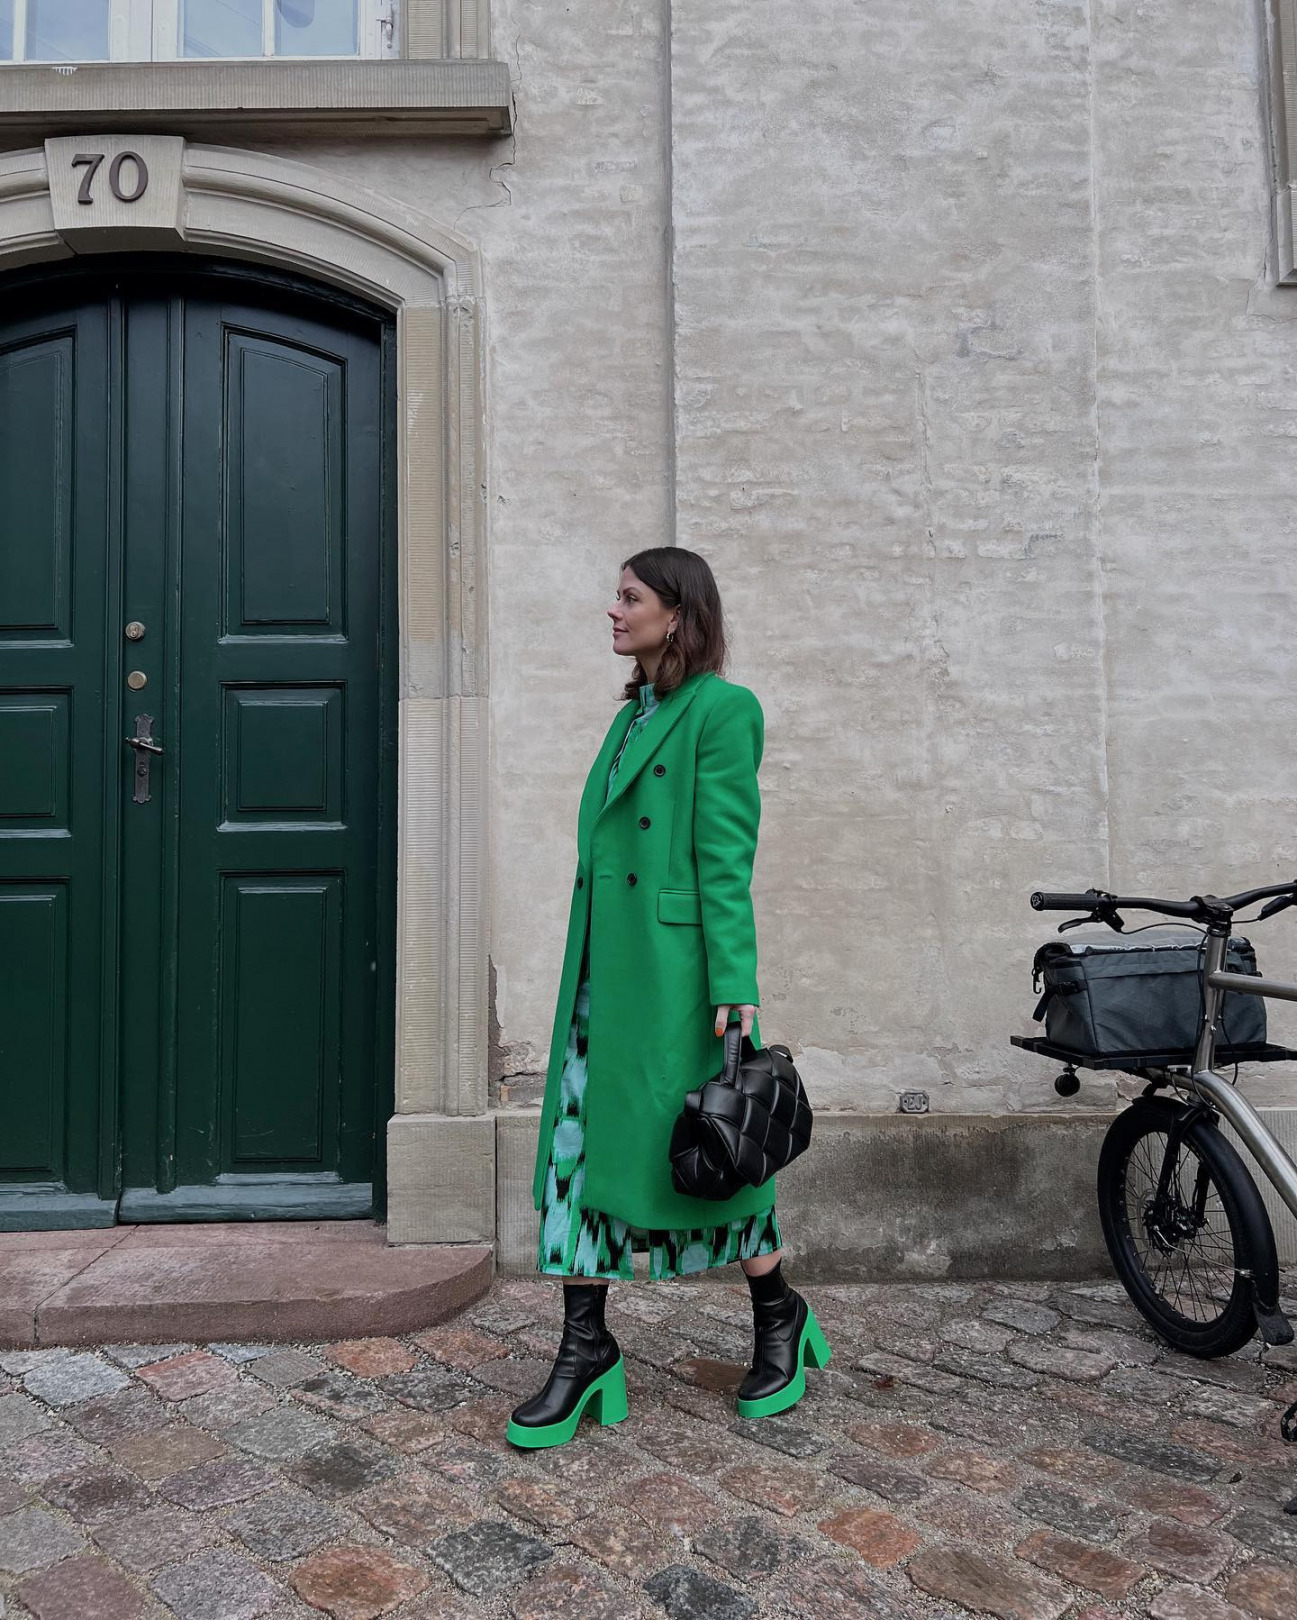 Haftanın Moda Instagramları: Yeniden Yeşil